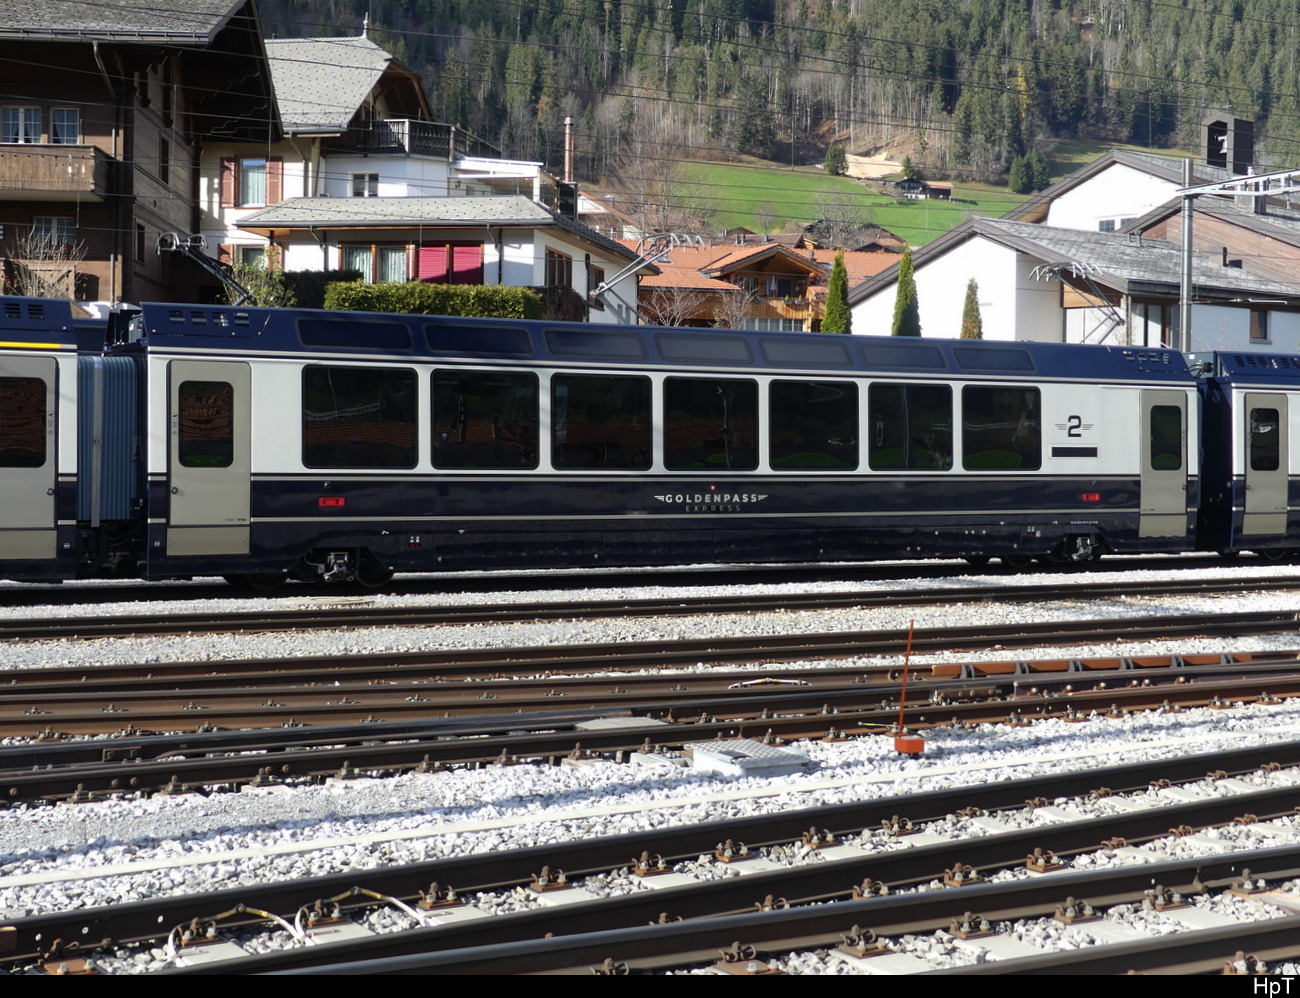 MOB / Goldenpass -  Spurwechsel 2 Kl. Personenwagen Bs  96 85 8300 281-9 abgestellt im Zweisimmen am 20.11.2022